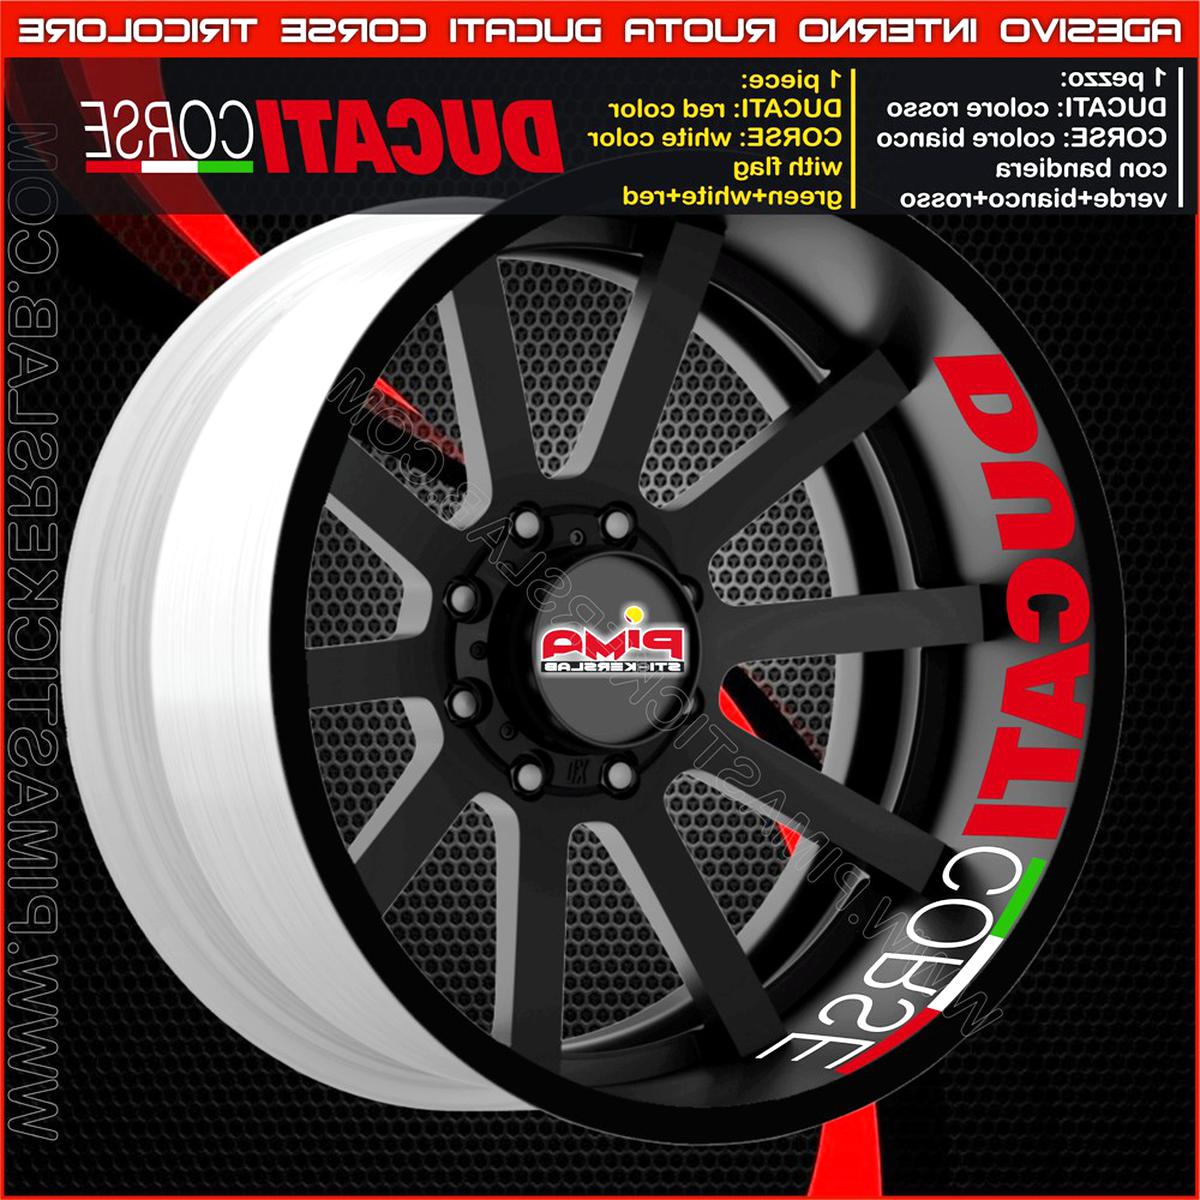 Adesivi cerchi moto Ducati Corse strisce ruote profili stickers wheels Racing 5 